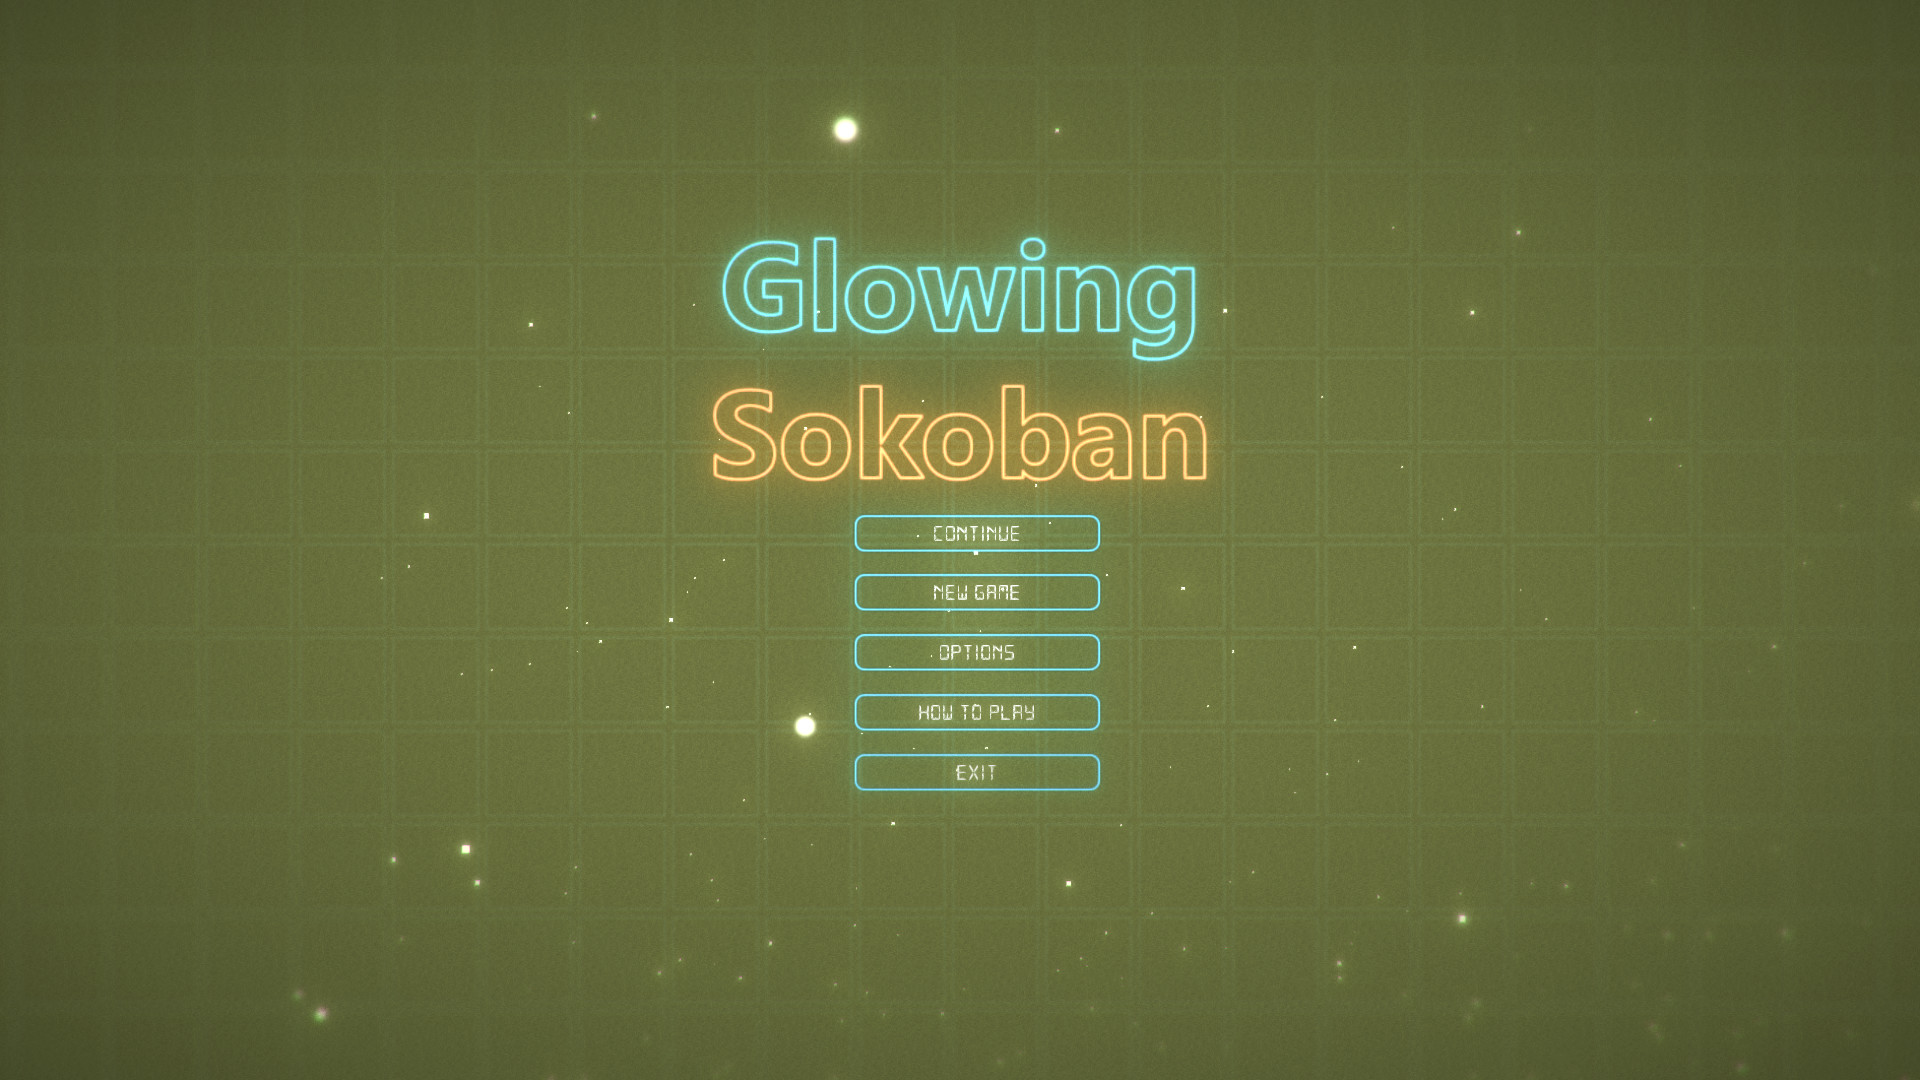 Glowing Sokoban screenshot